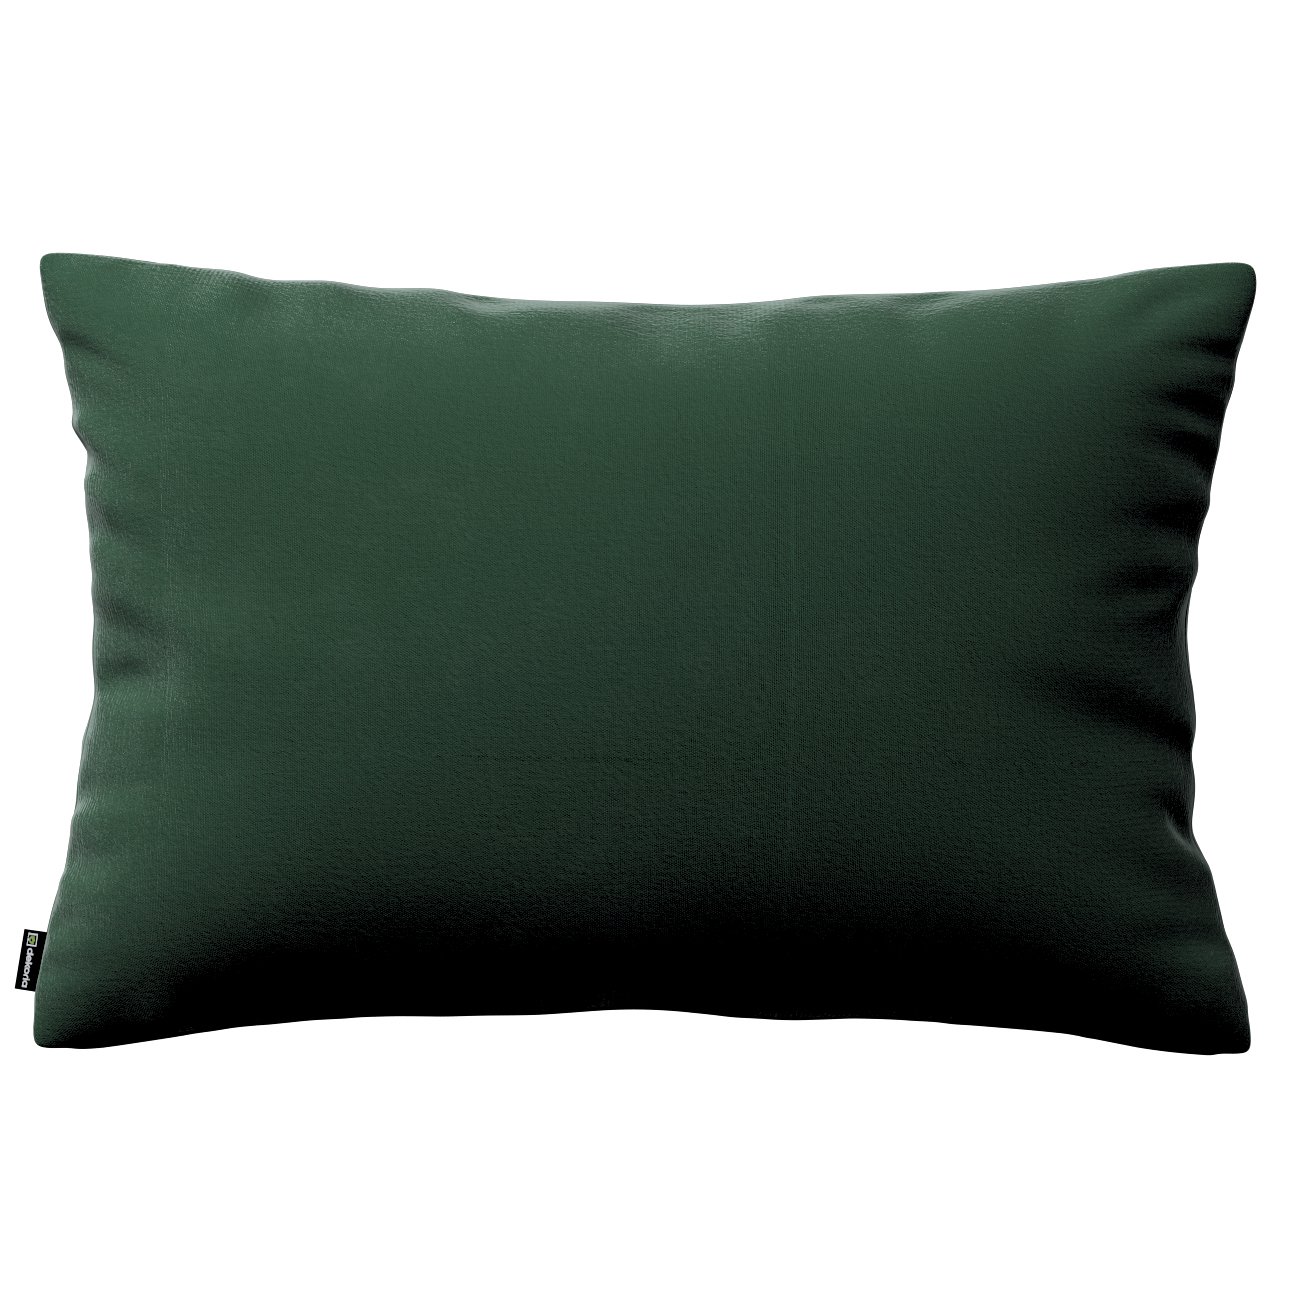 Dekoria Karin - jednoduchá obliečka, 60x40cm, lesná zelená, 60 x 40 cm, Crema, 180-63